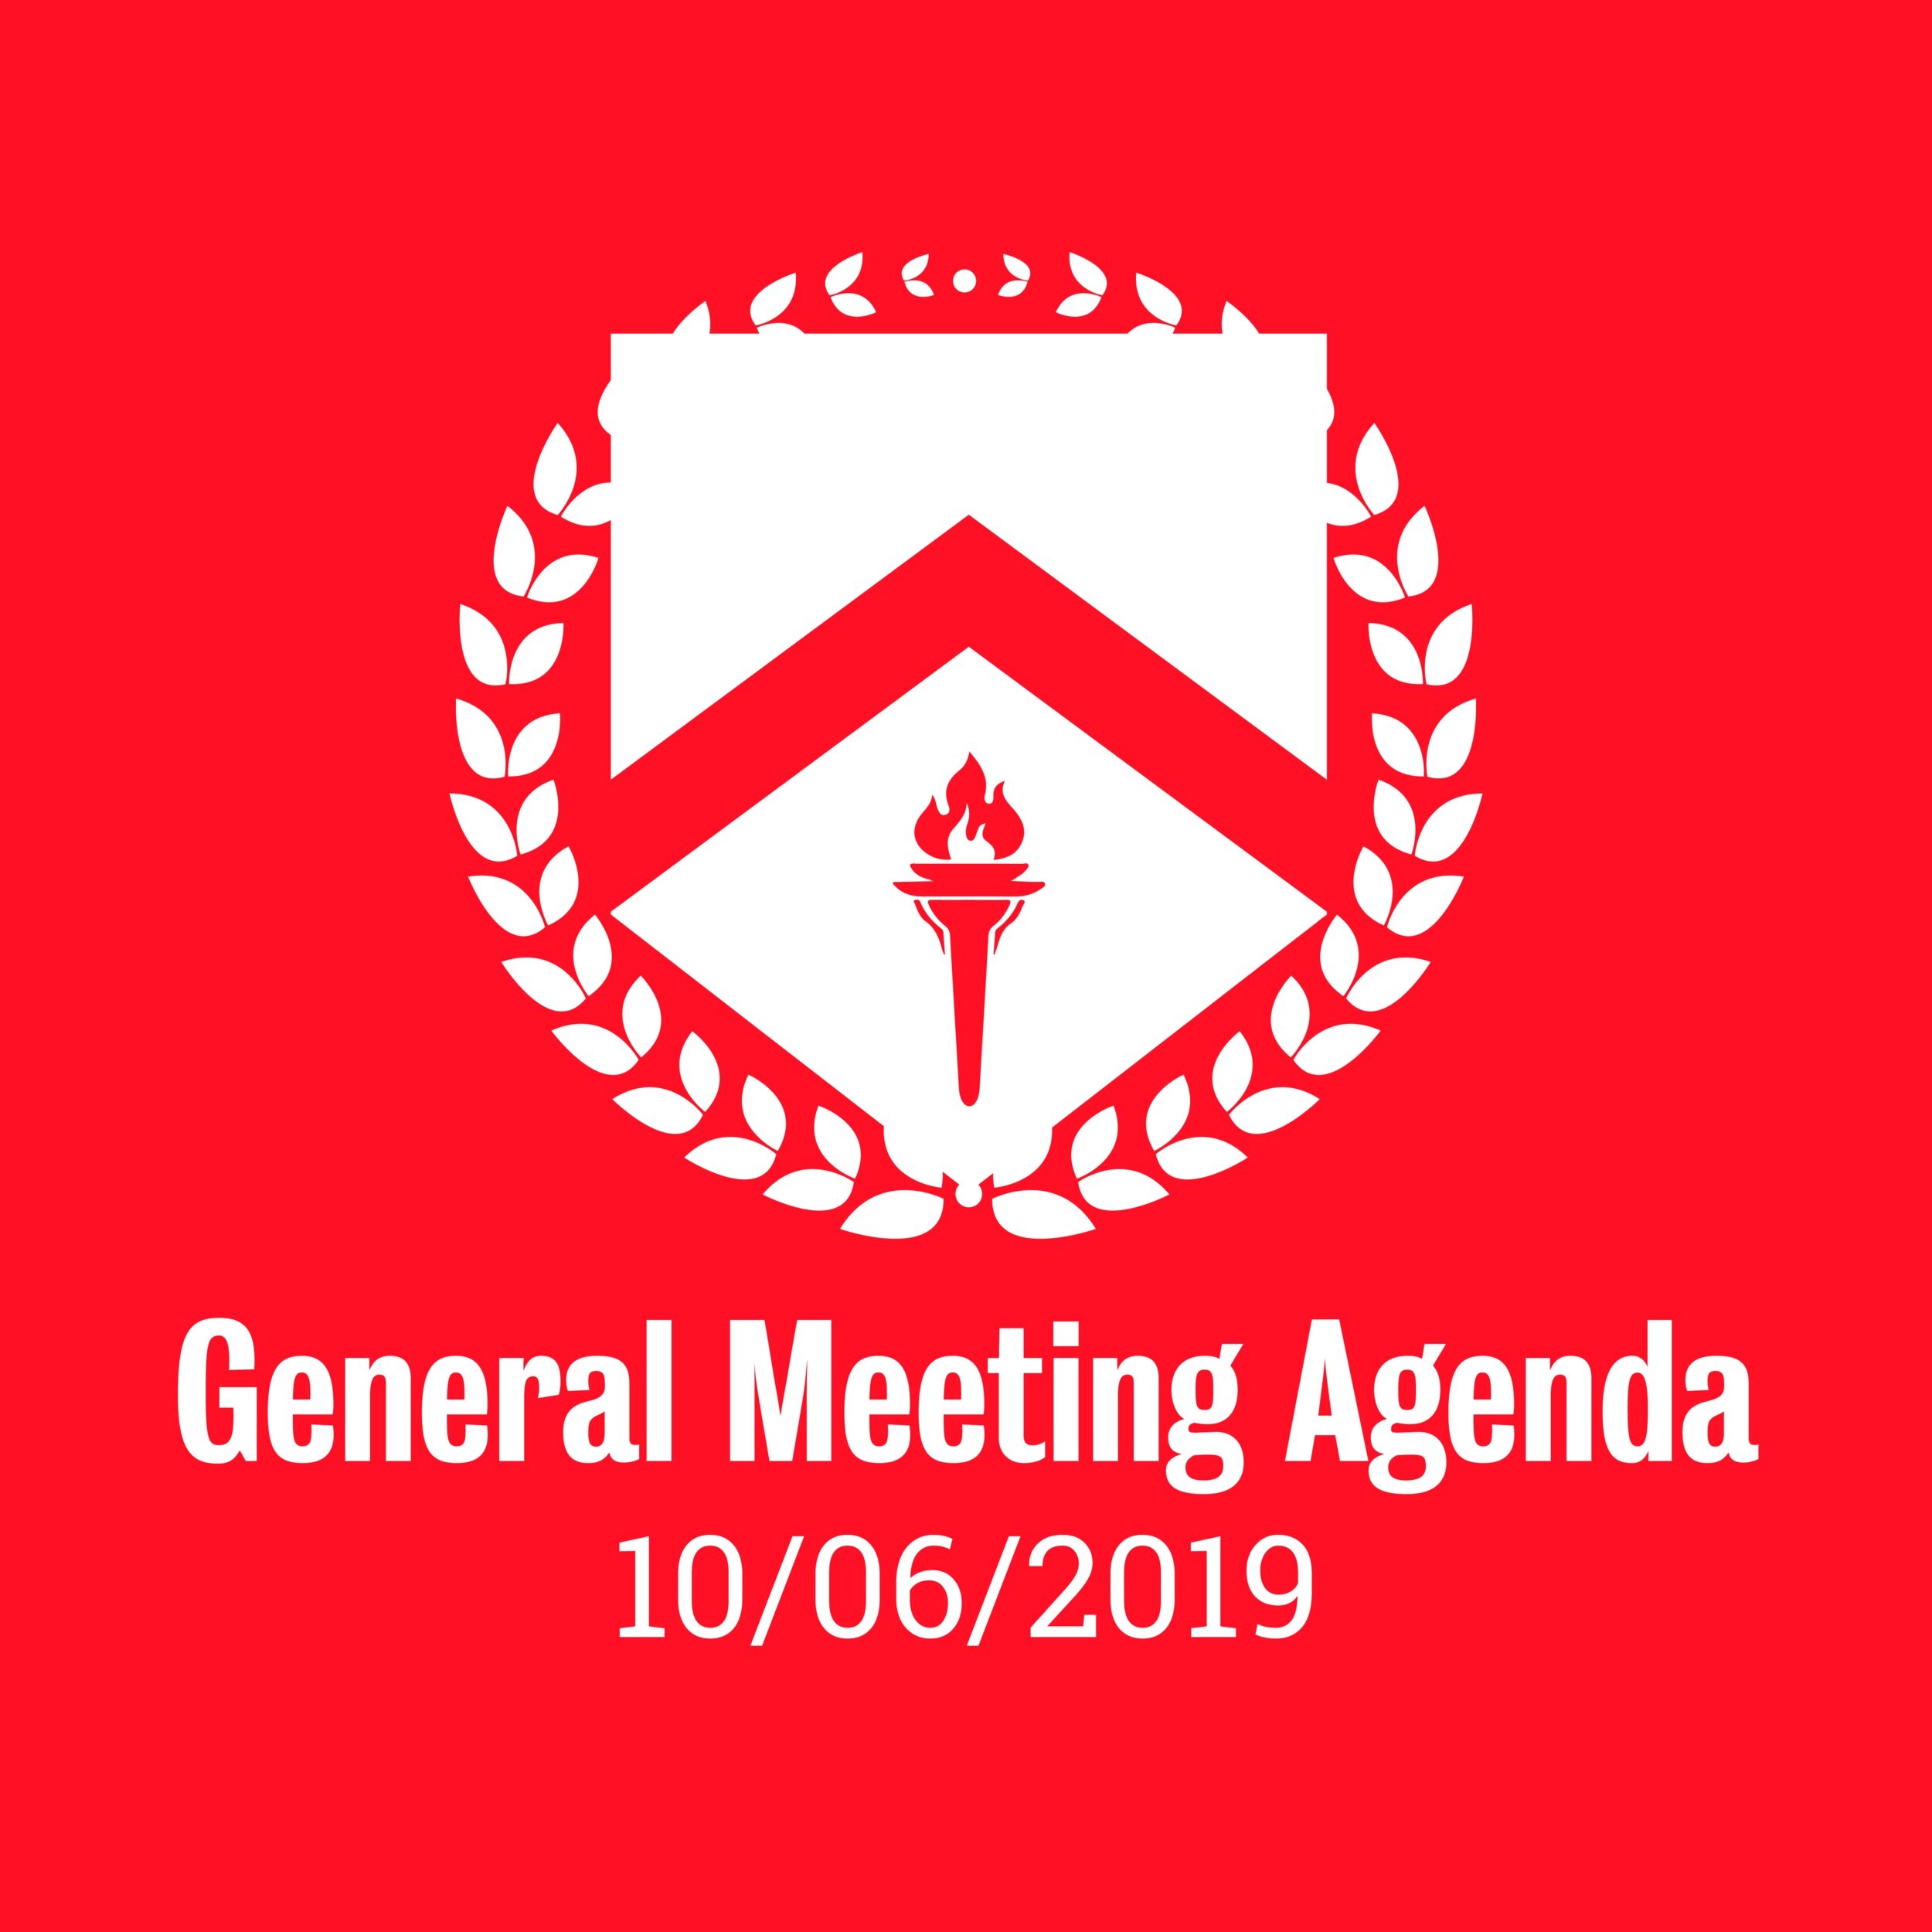 General Meeting Agenda 10/06/2019